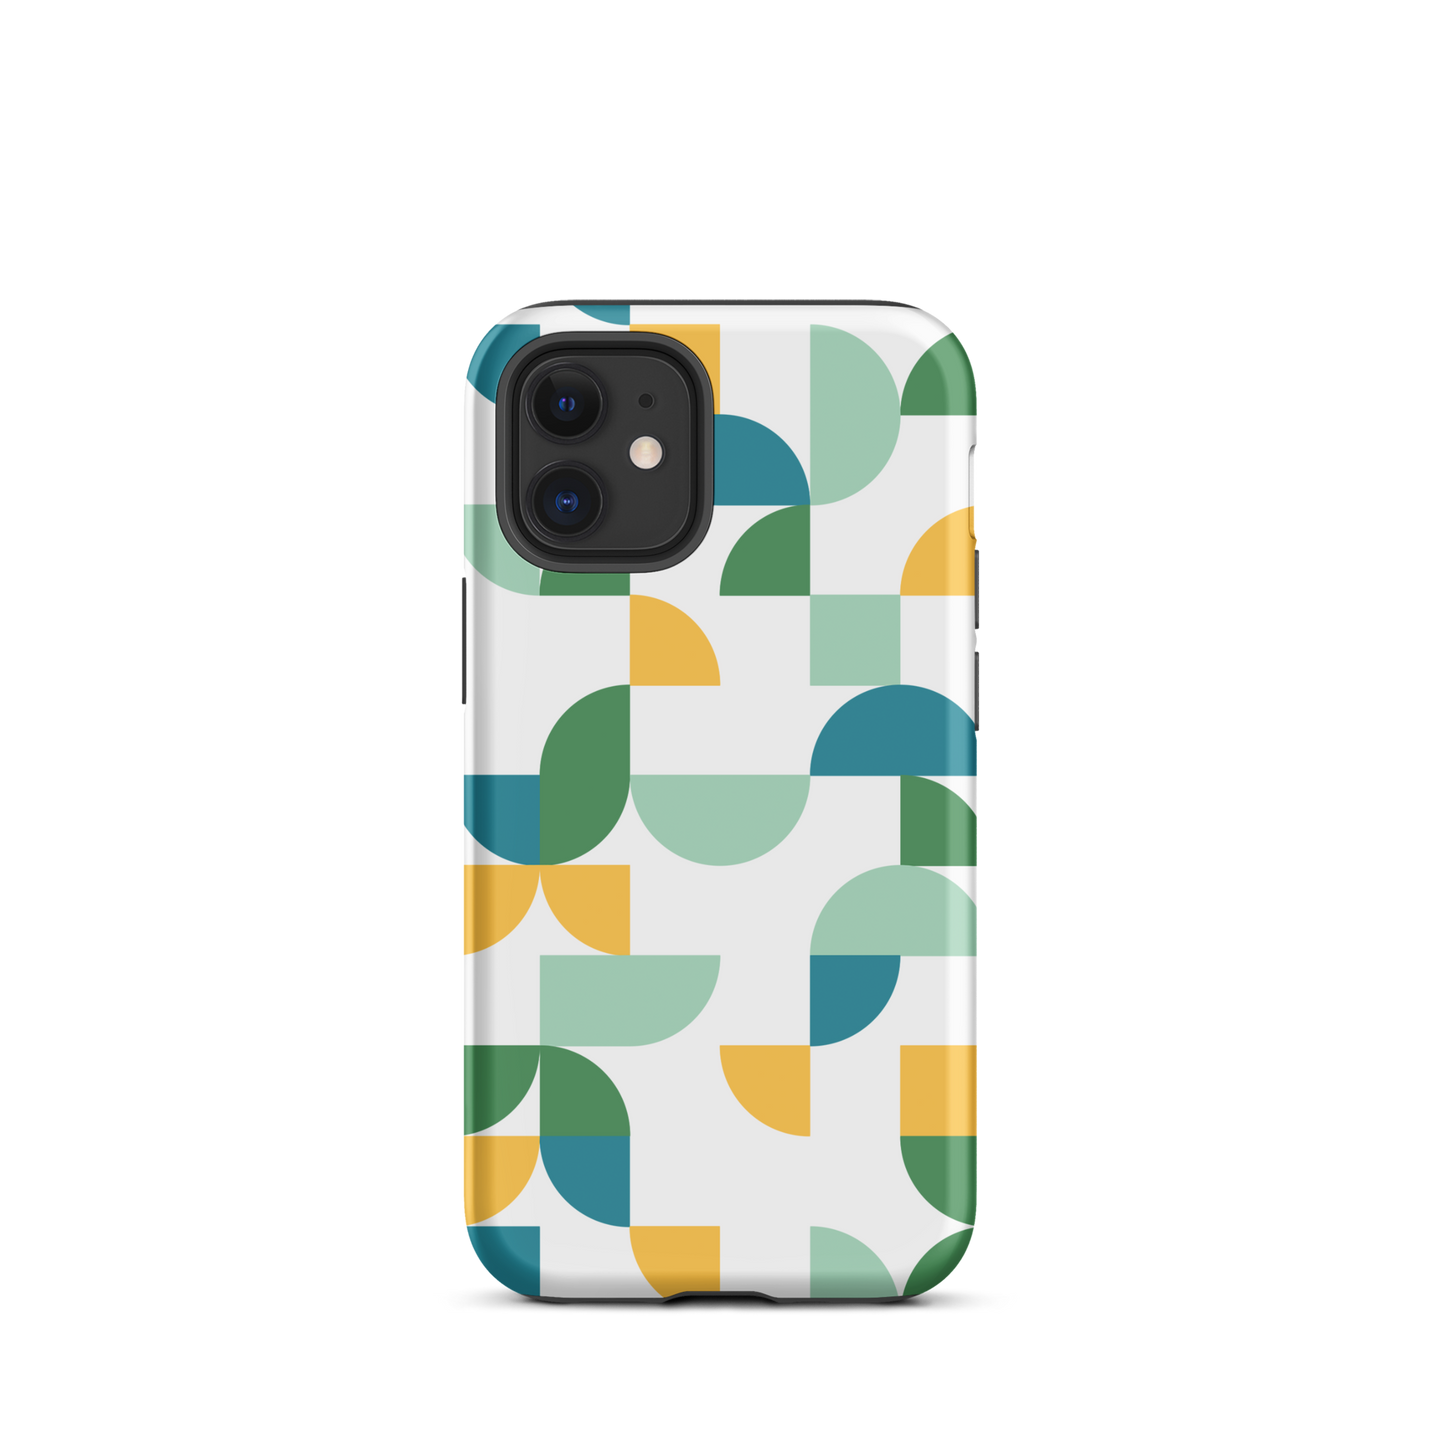 iPhone 12 mini tough case in Geometria I Midday design